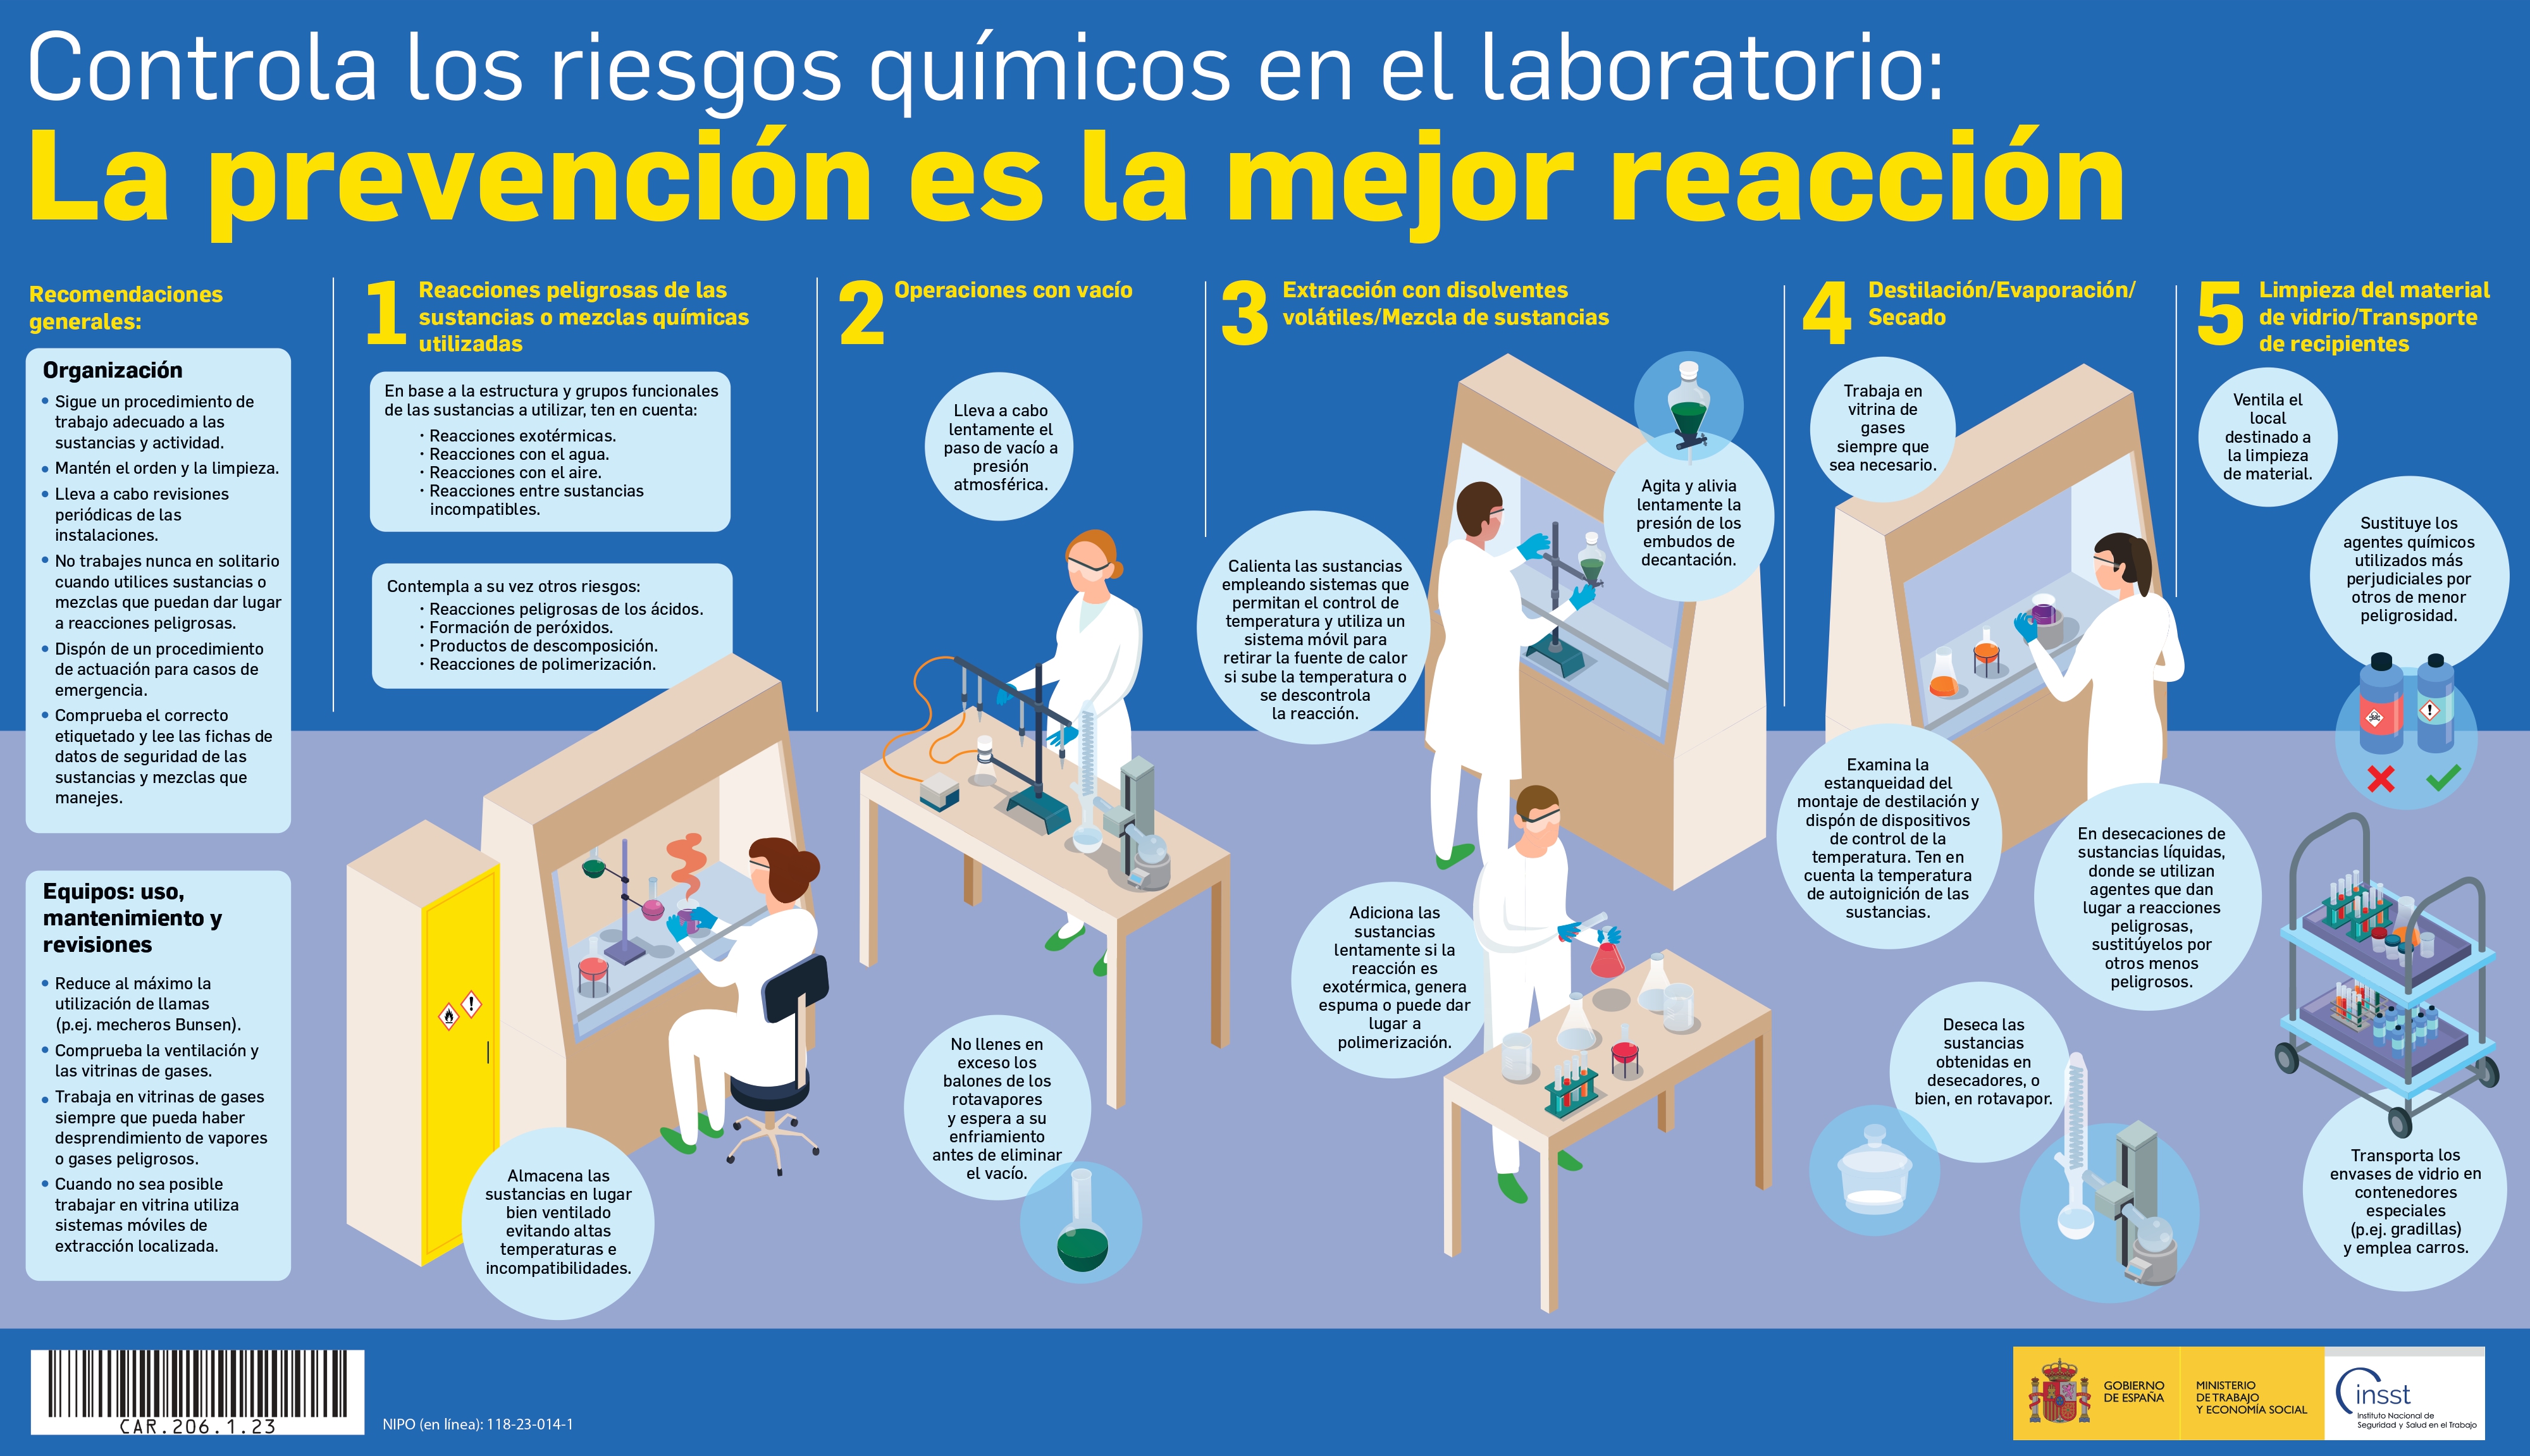 Miniatura del cartel Controla los riesgos químicos en el laboratorio: La prevención es la mejor reacción